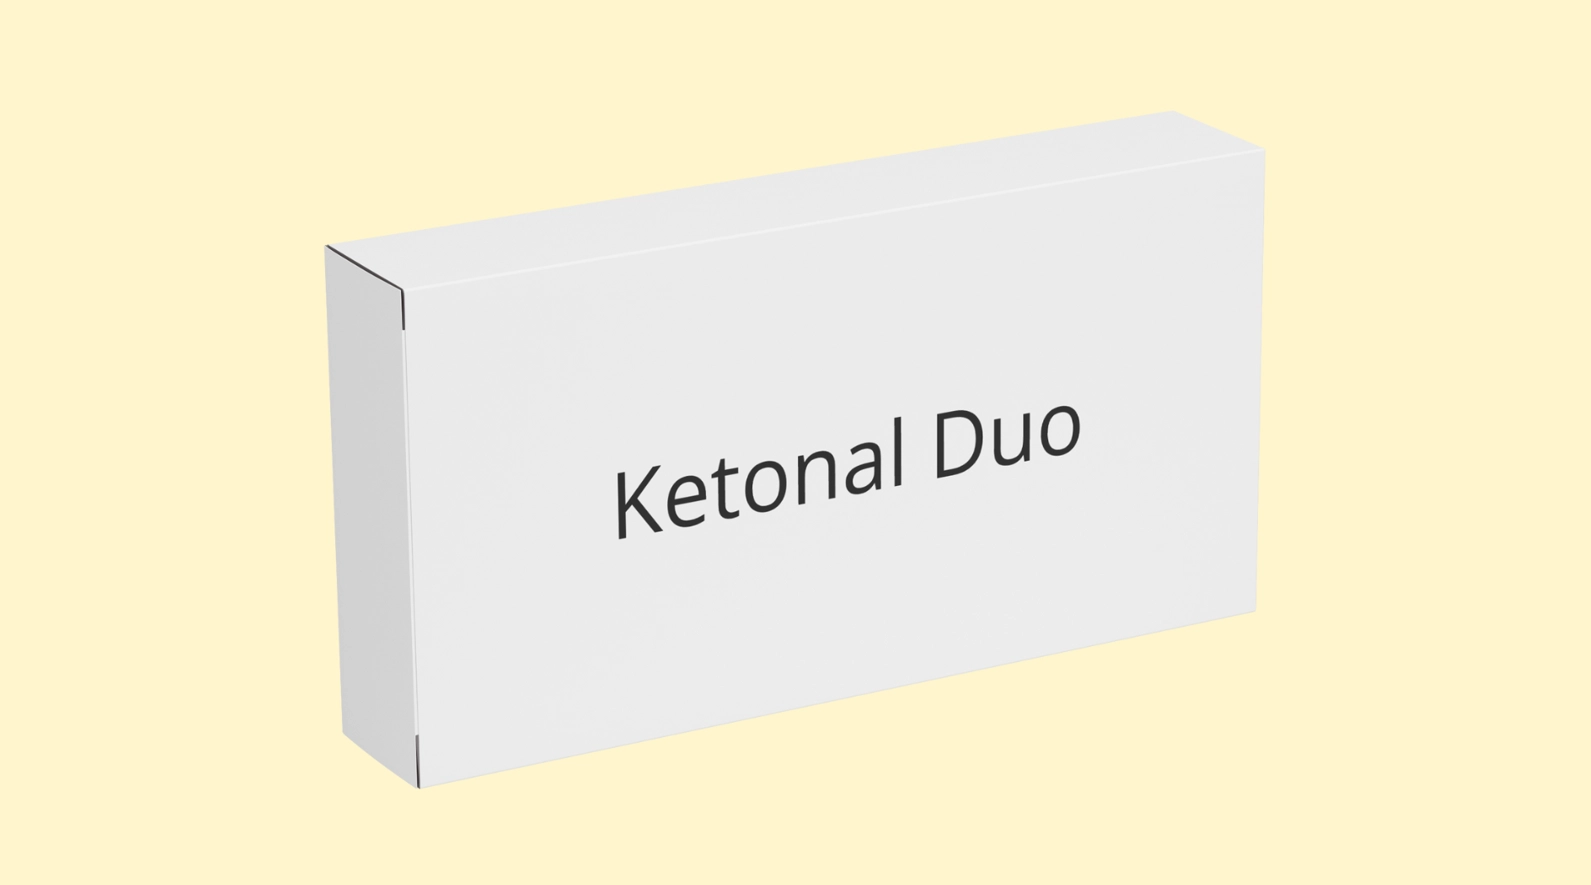 Ketonal Duo E recepta   recepta online z konsultacją | cena  dawkowanie  przeciwwskazania